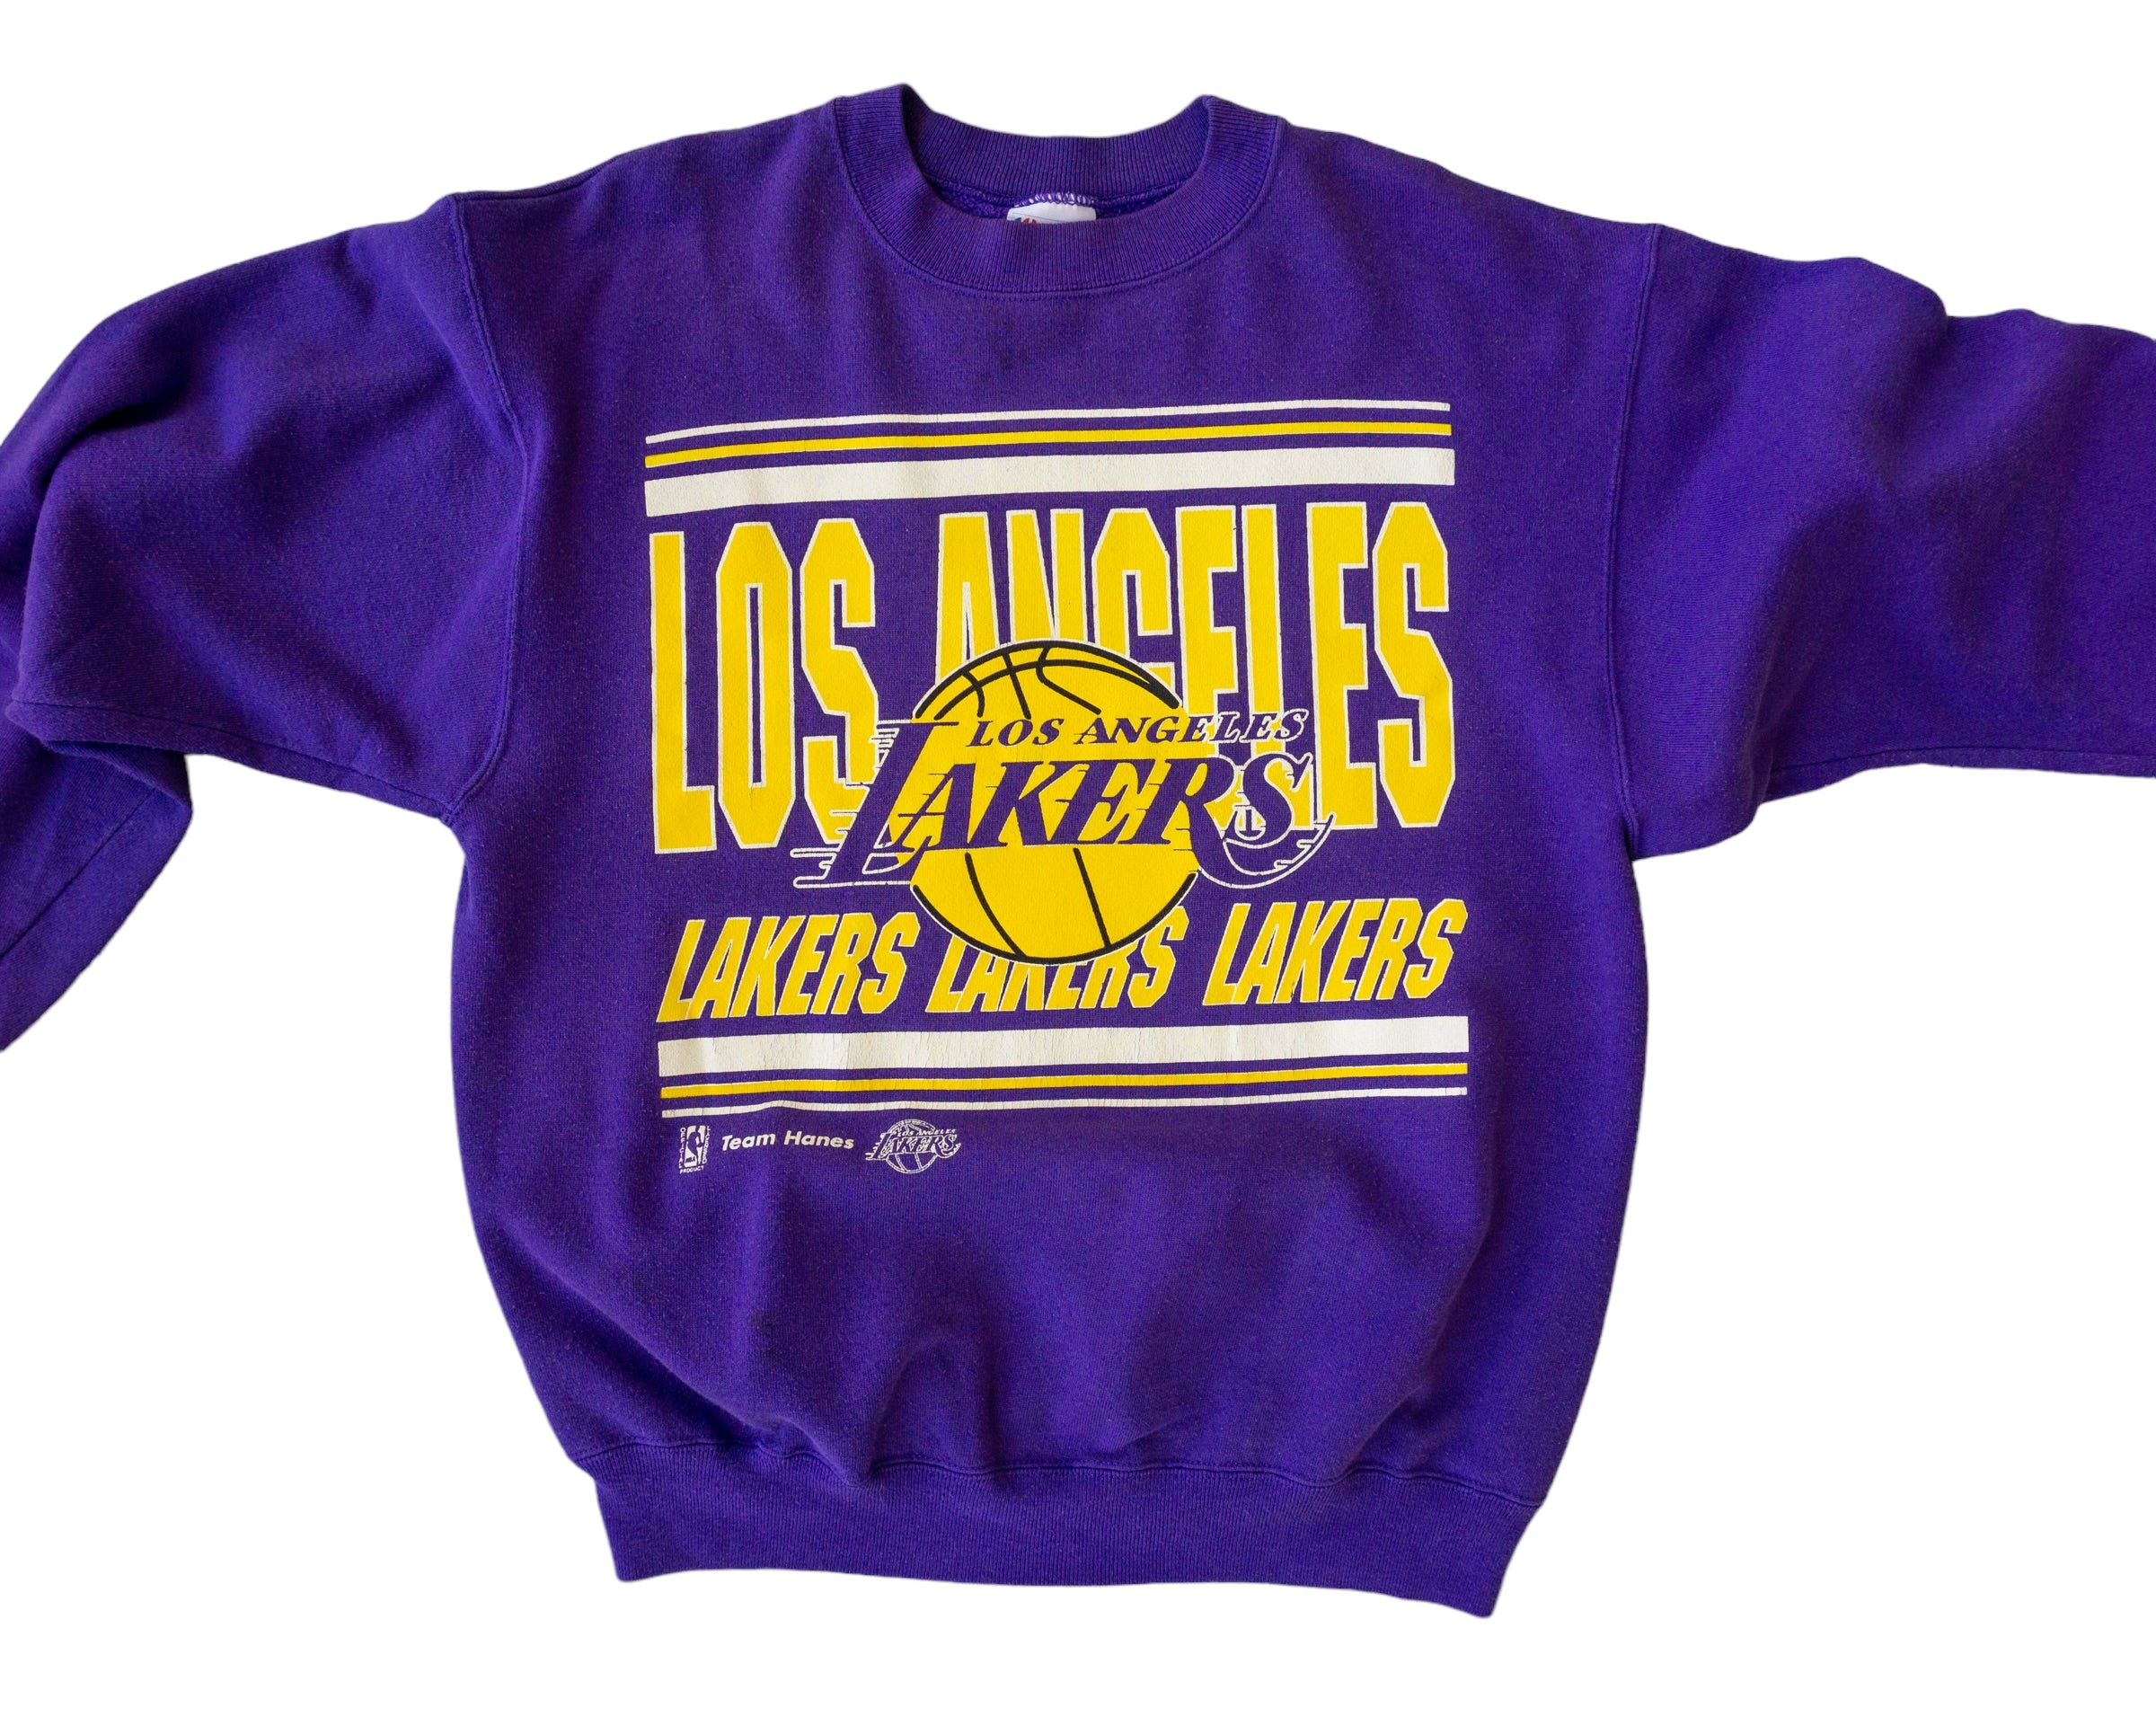 Los Angeles Lakers Sweatshirts in Los Angeles Lakers Team Shop 